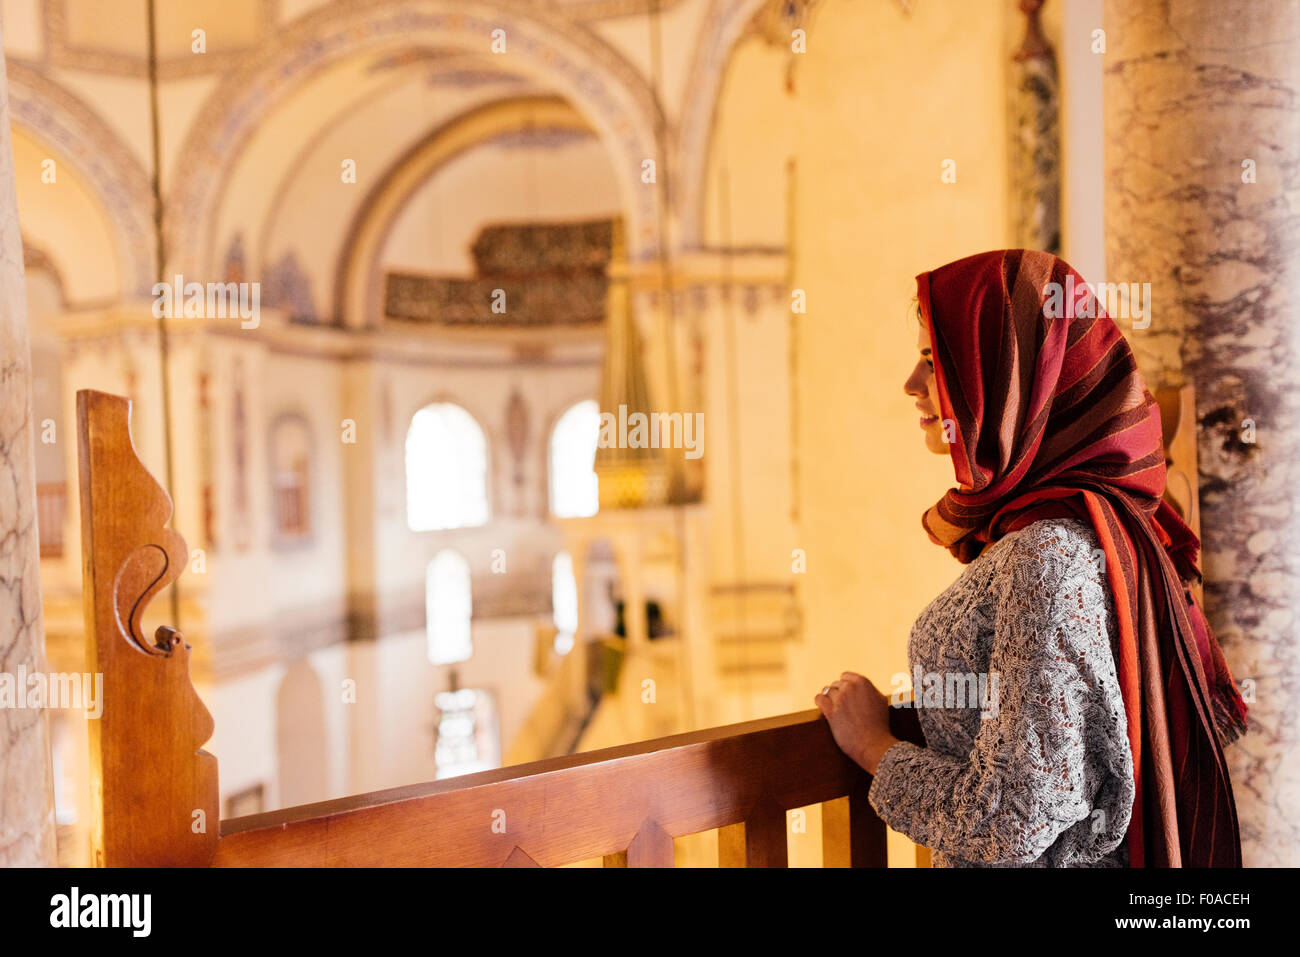 Jeune femme dans la mosquée, le port de foulard, Istanbul, Turquie Photo  Stock - Alamy